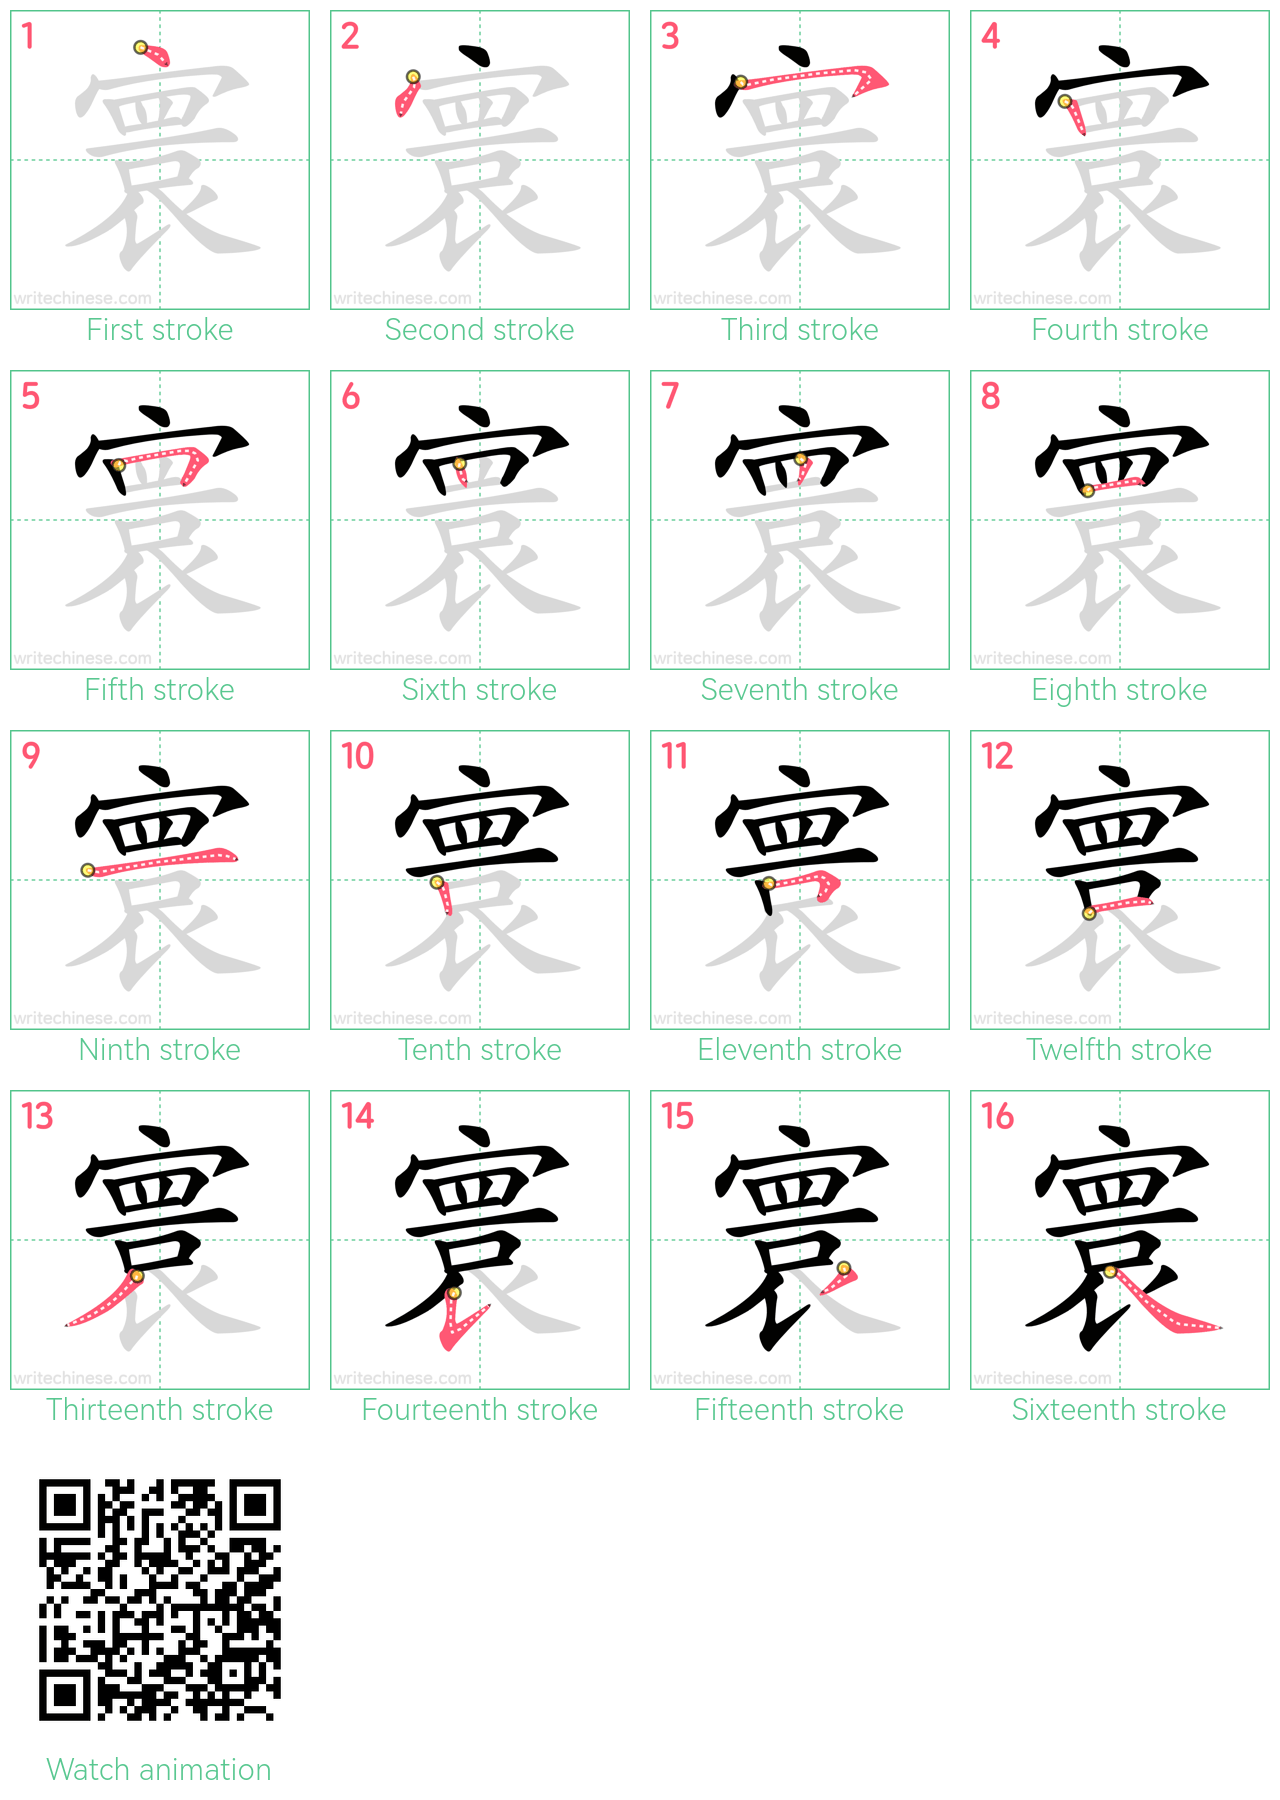 寰 step-by-step stroke order diagrams